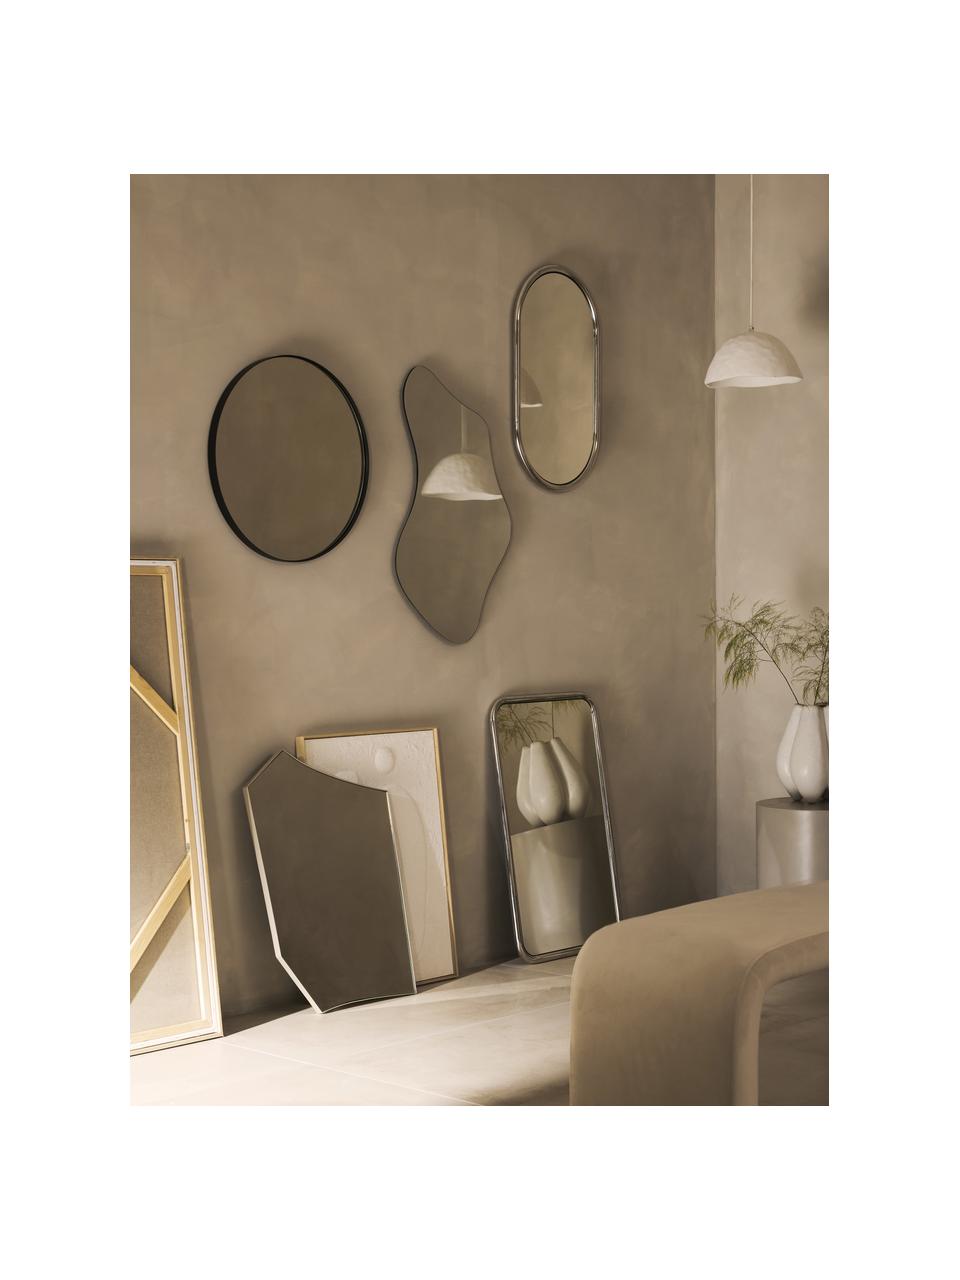 Eckiger Wandspiegel Blake, Rahmen: Edelstahl, Spiegelfläche: Spiegelglas, Rückseite: Mitteldichte Holzfaserpla, Silberfarben, B 50 x H 80 cm